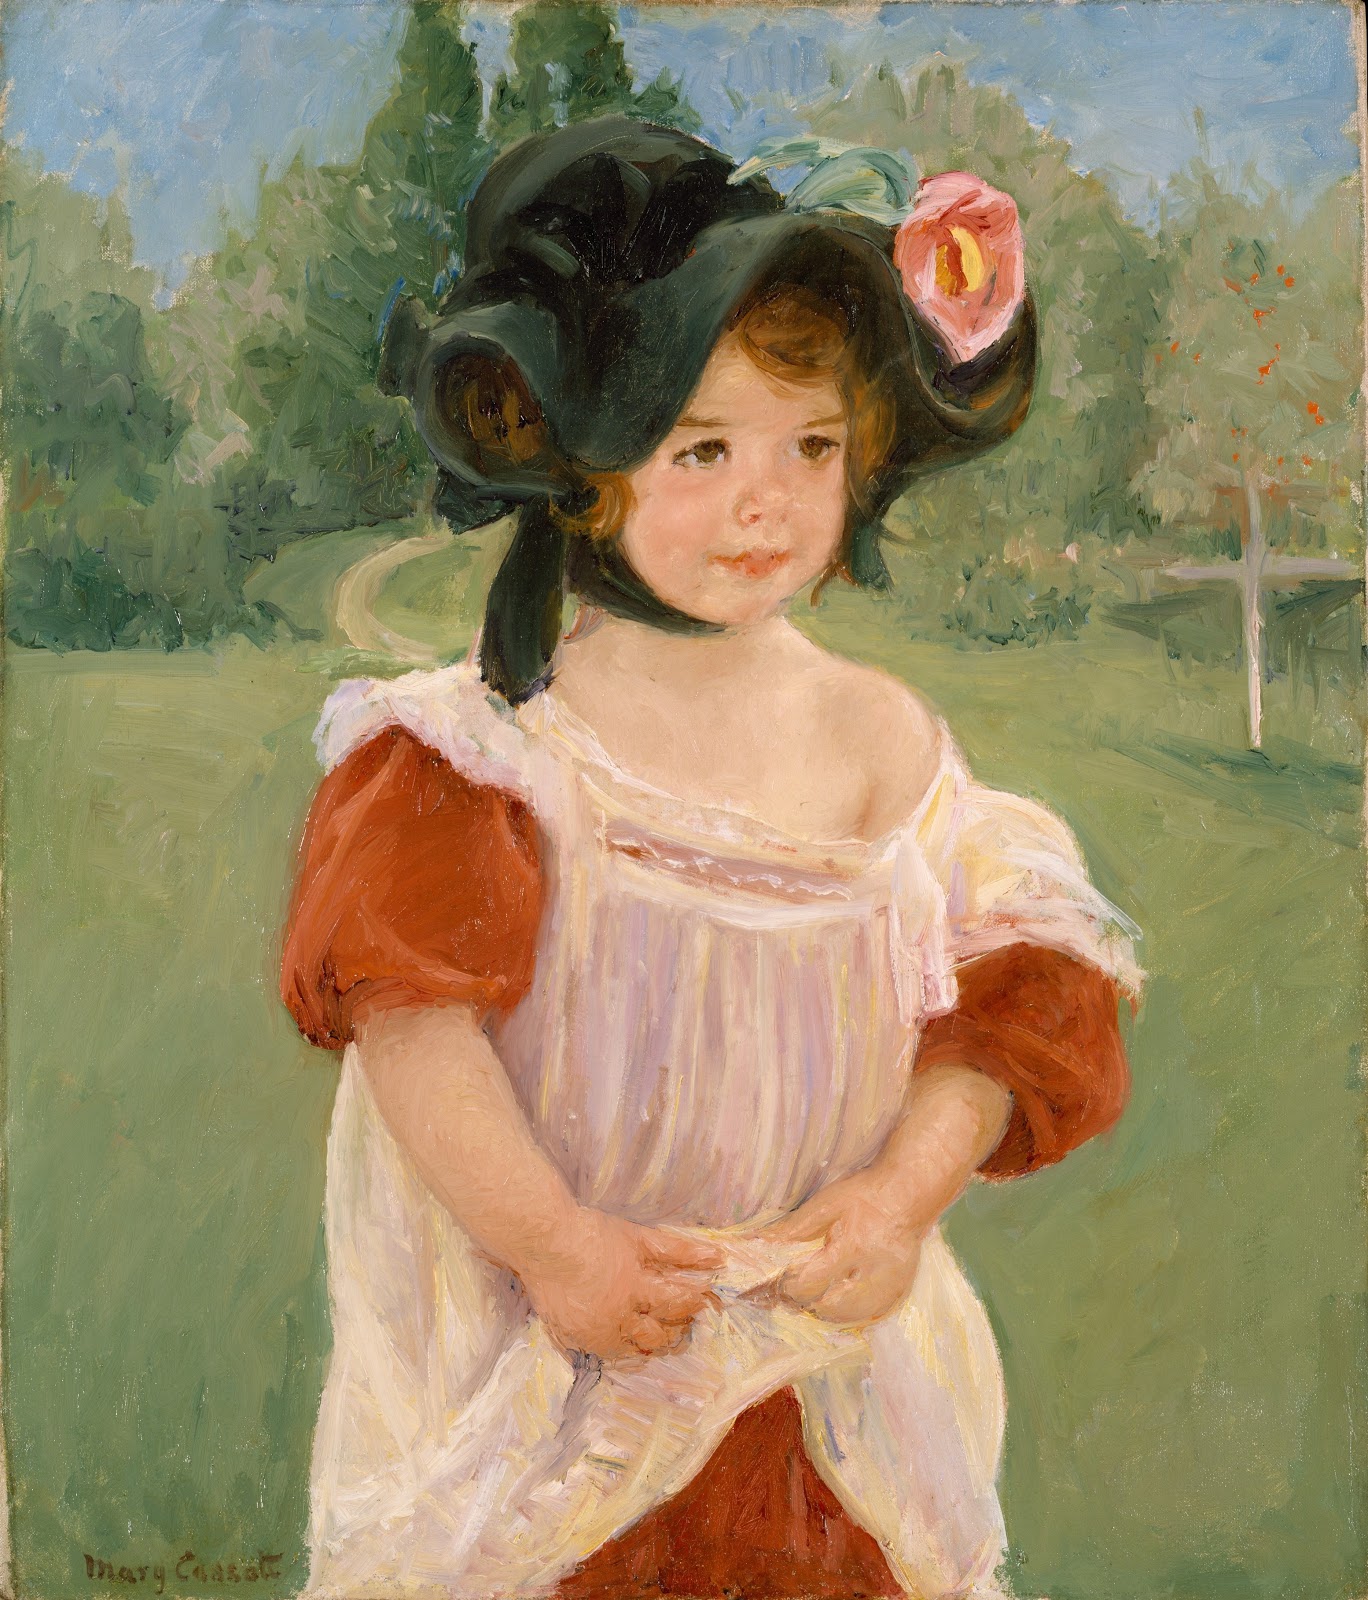 Mary+Cassatt-1844-1926 (194).jpg